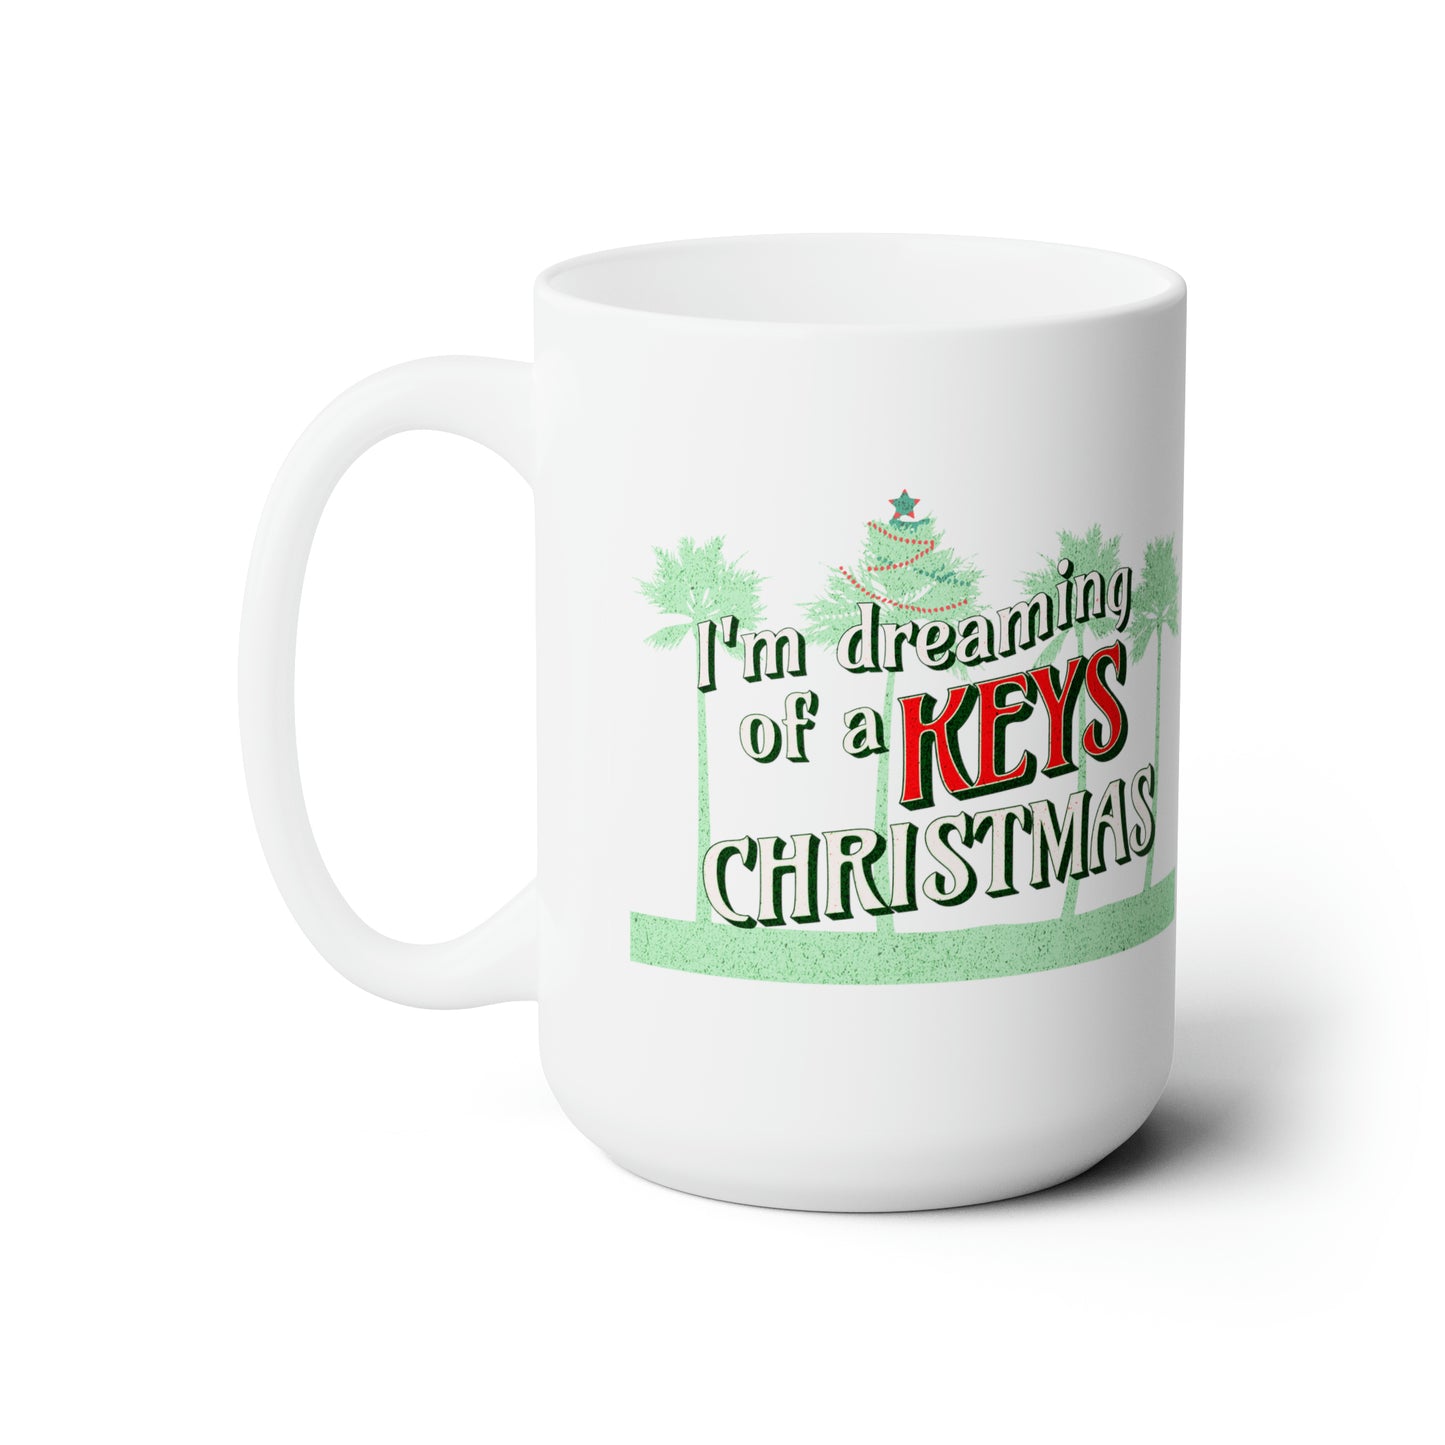 Dreaming of a Keys Christmas -Florida Keys Christmas Mug - Sand is the new snow